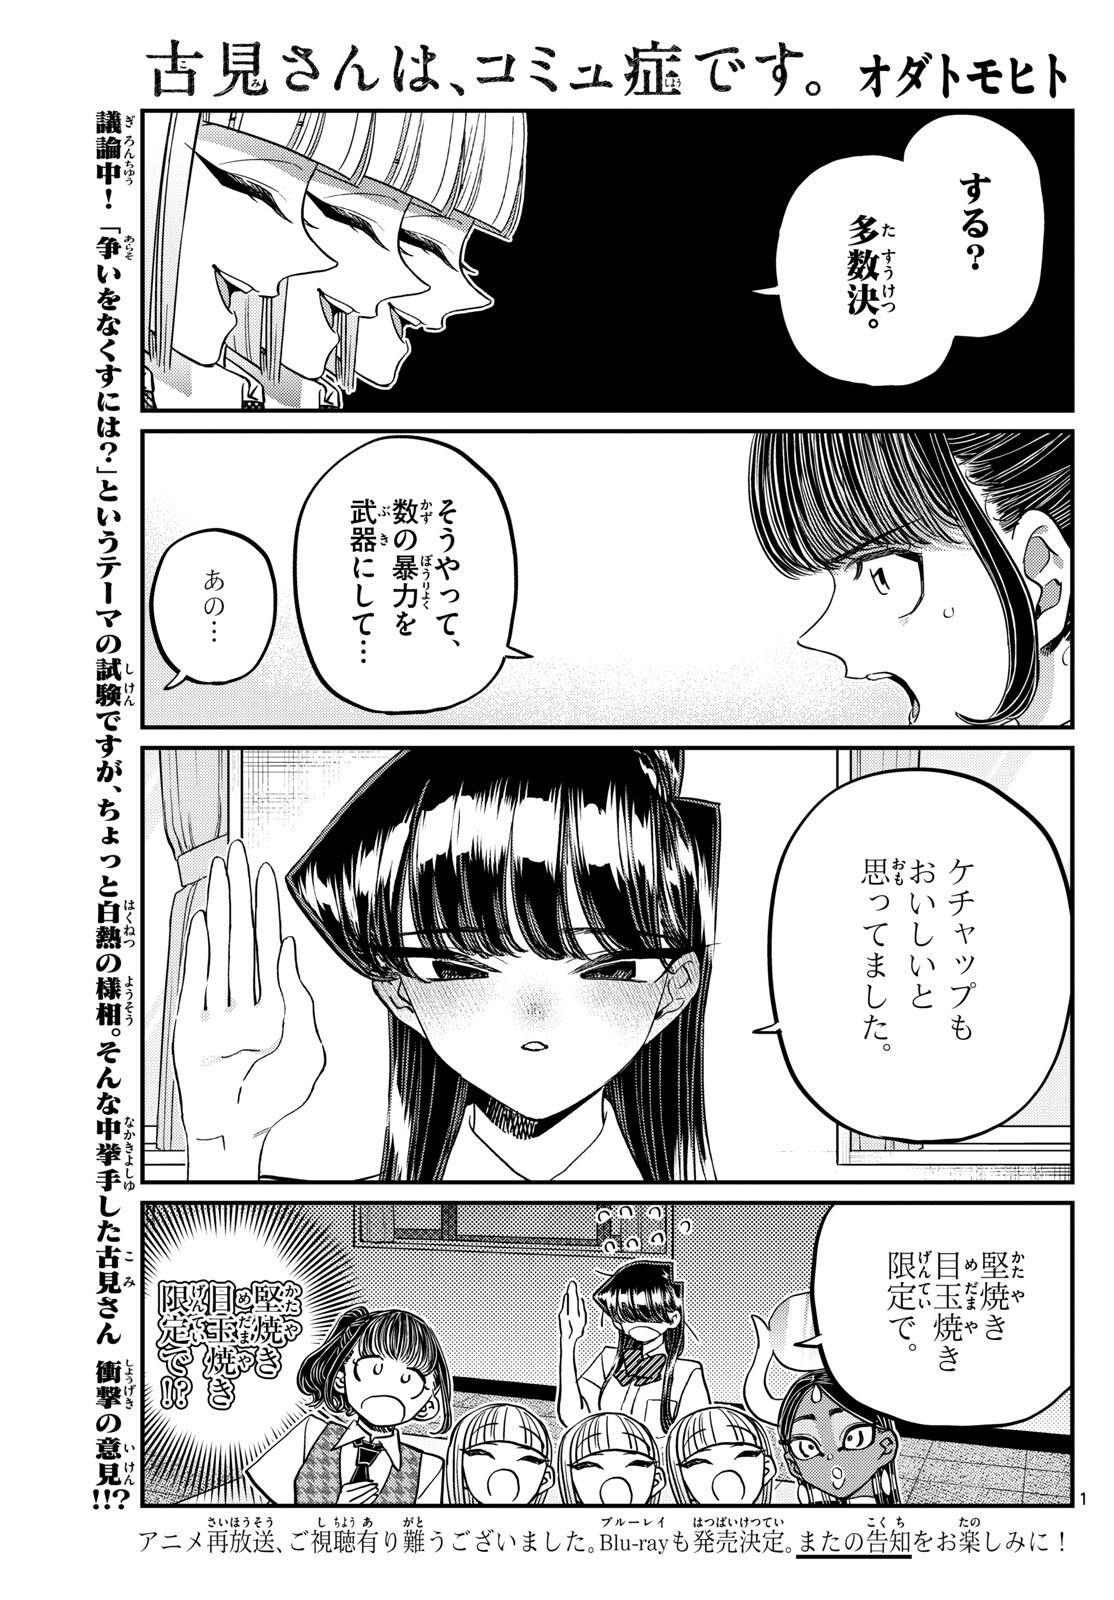 Komi-san wa Komyushou Desu - Chapter 441 - Page 1